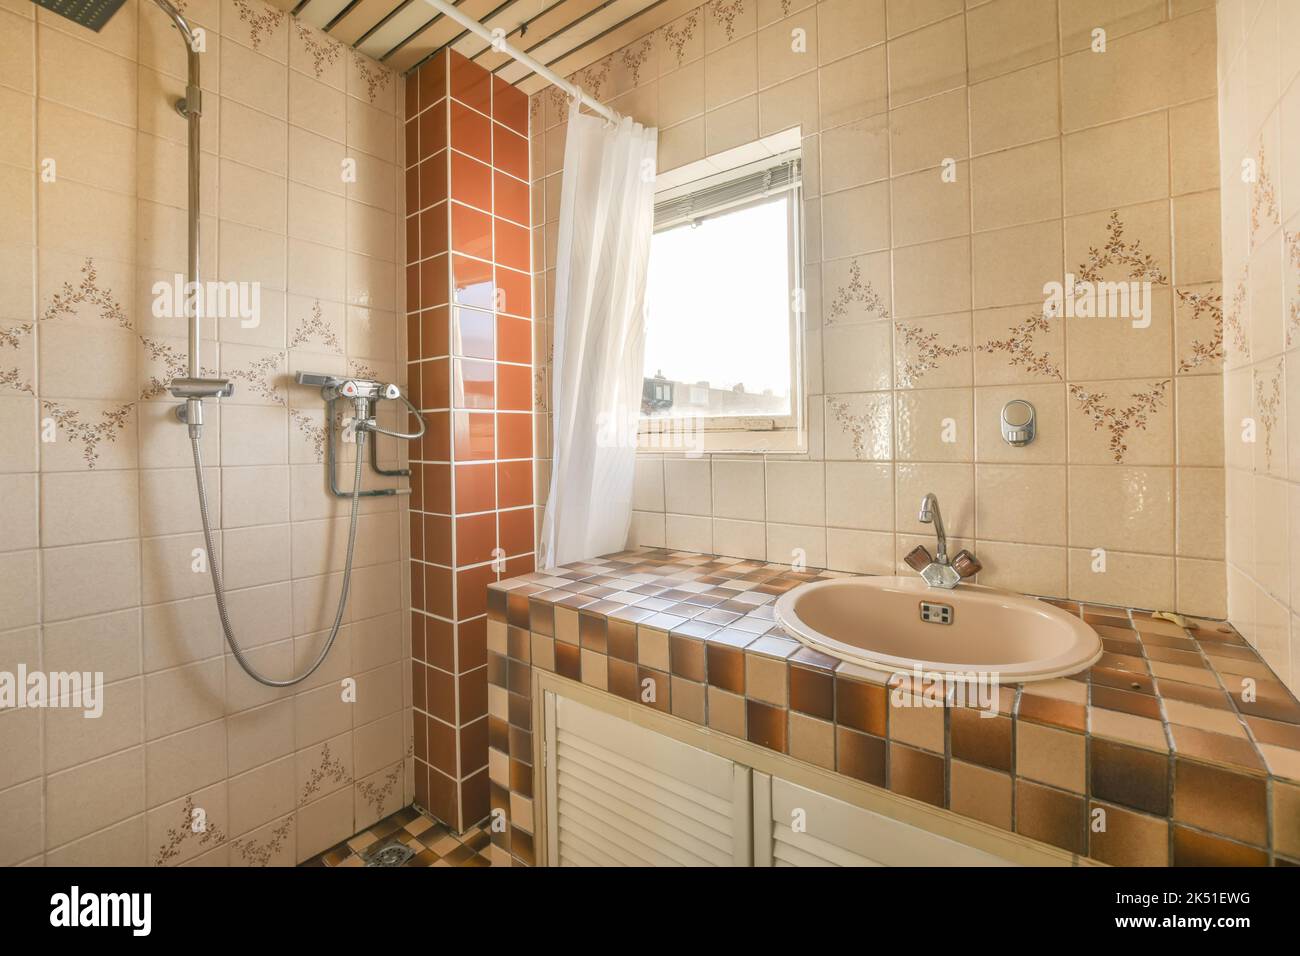 Lavabo in ceramica con rubinetto cromato vicino alla doccia in antico bagno d'epoca con pareti piastrellate in mosaico Foto Stock